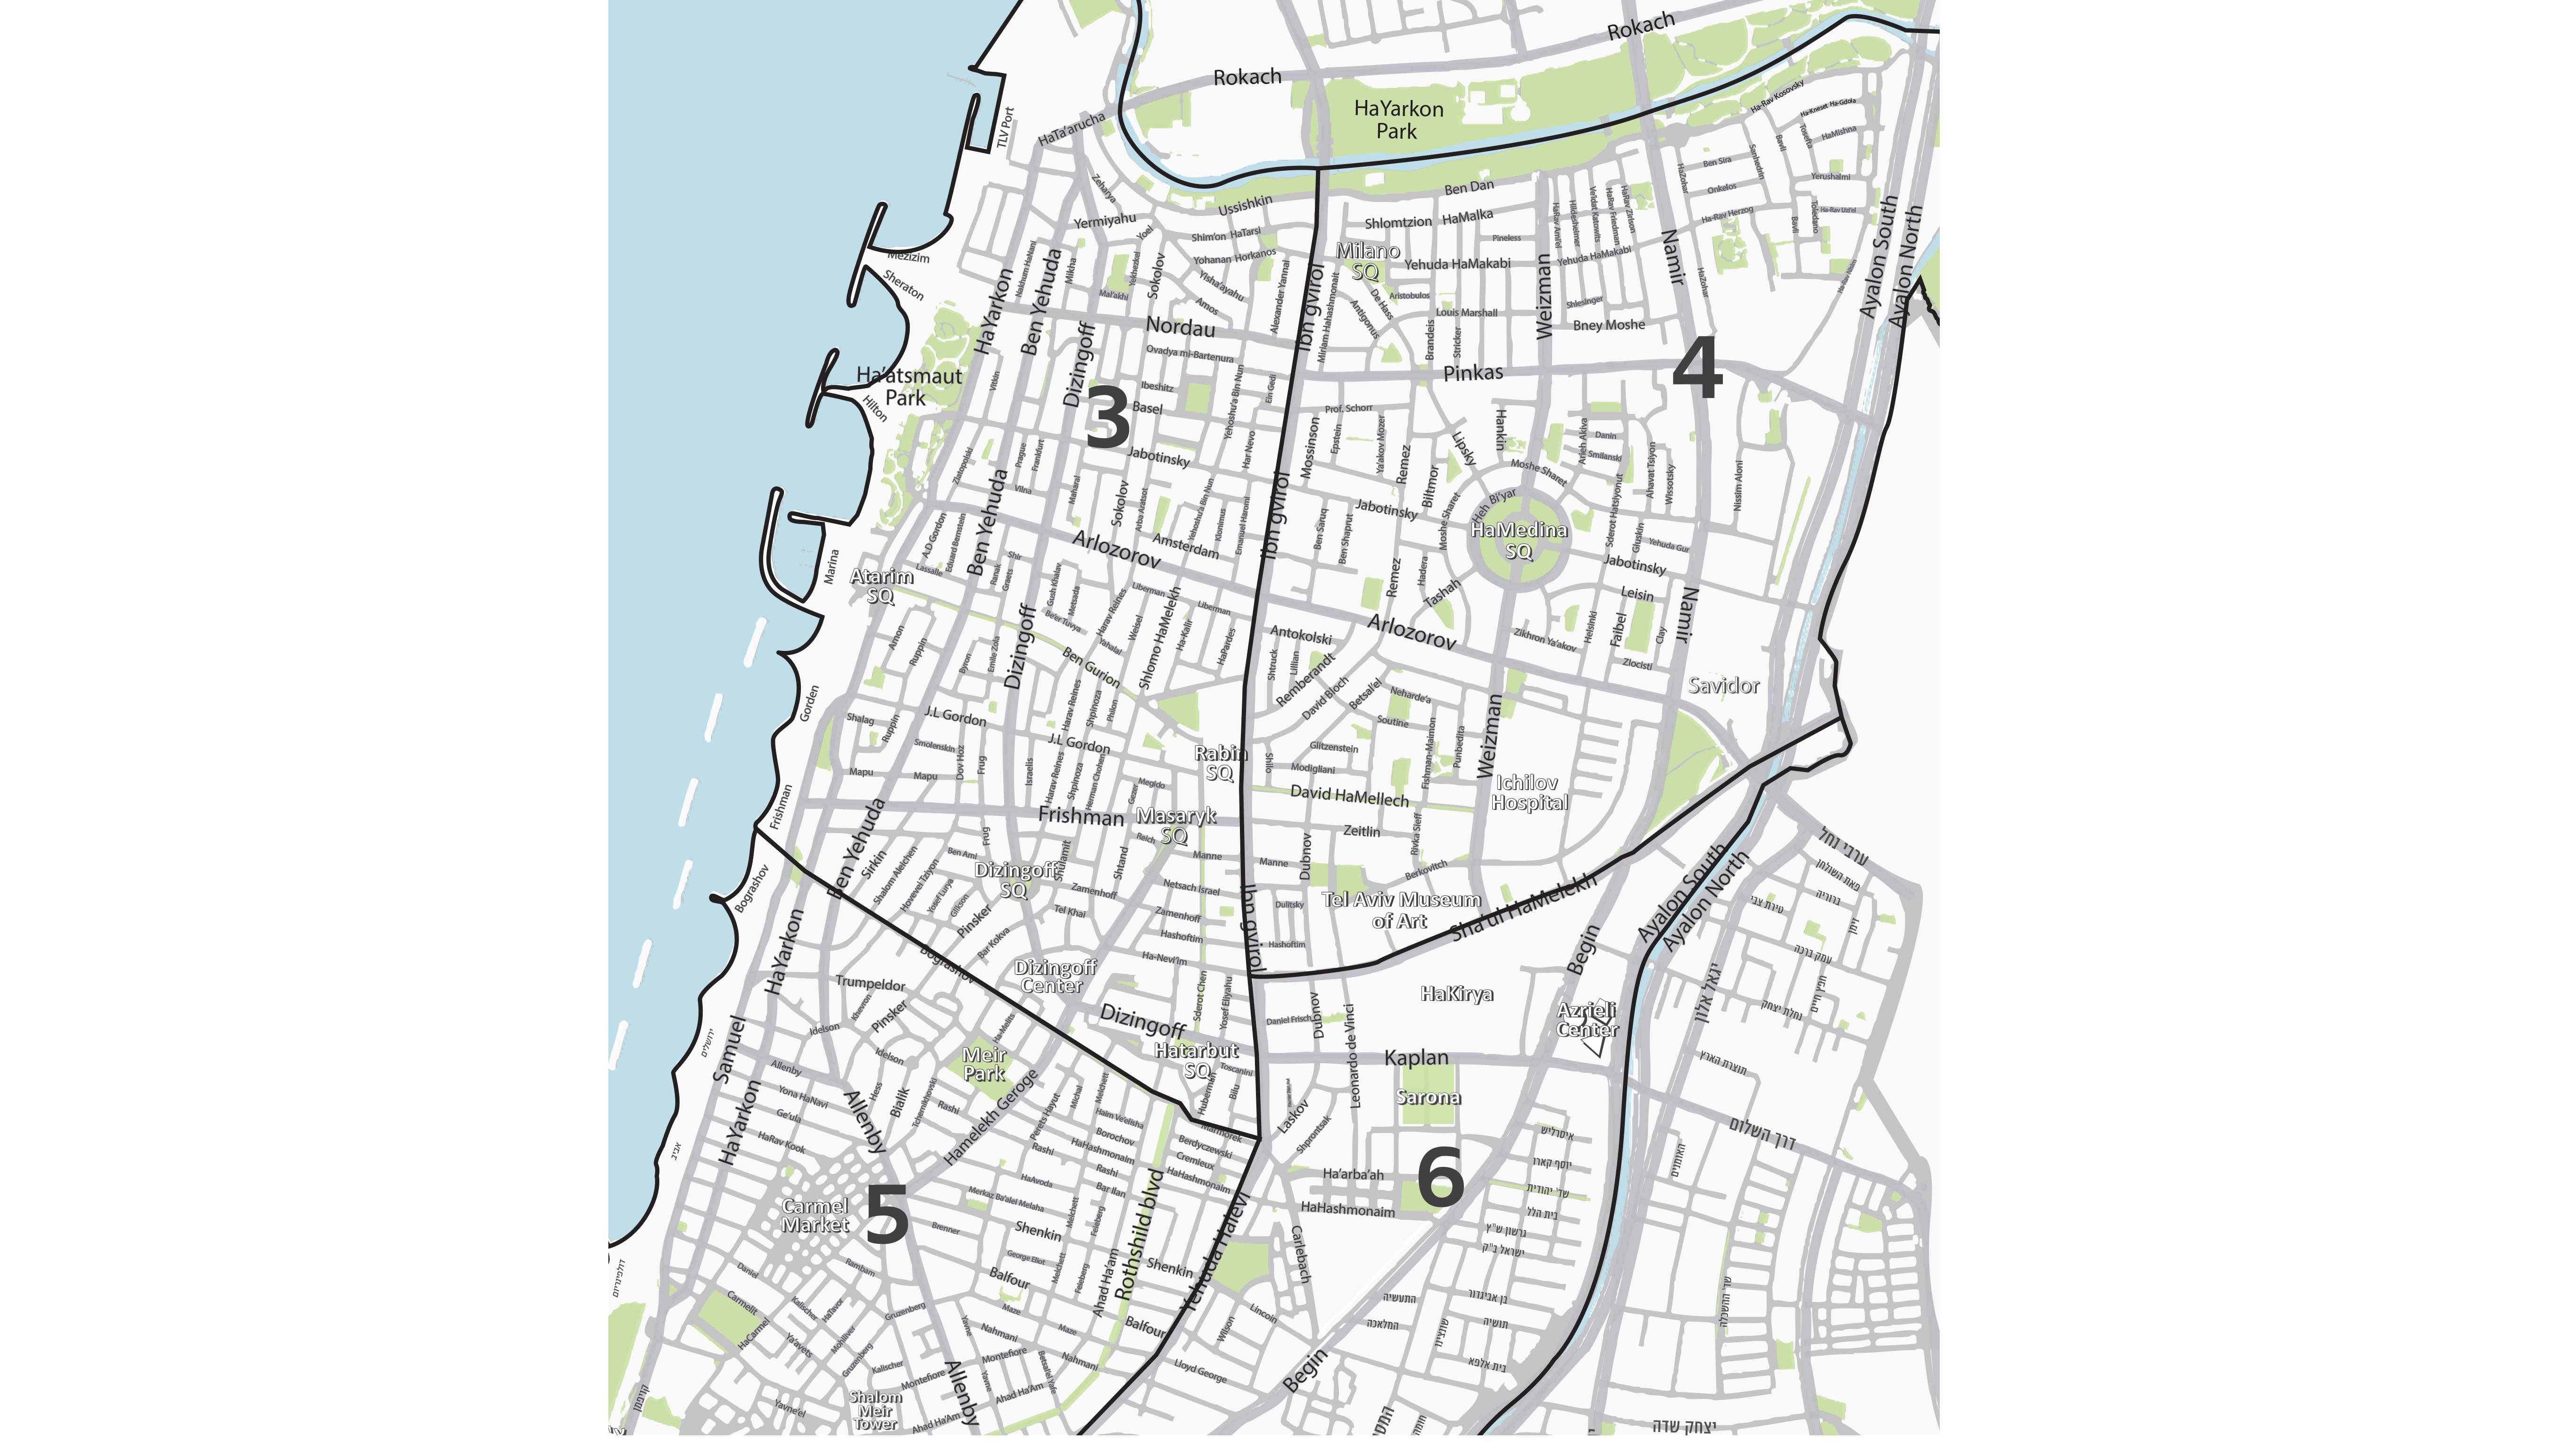 White city Area Guide